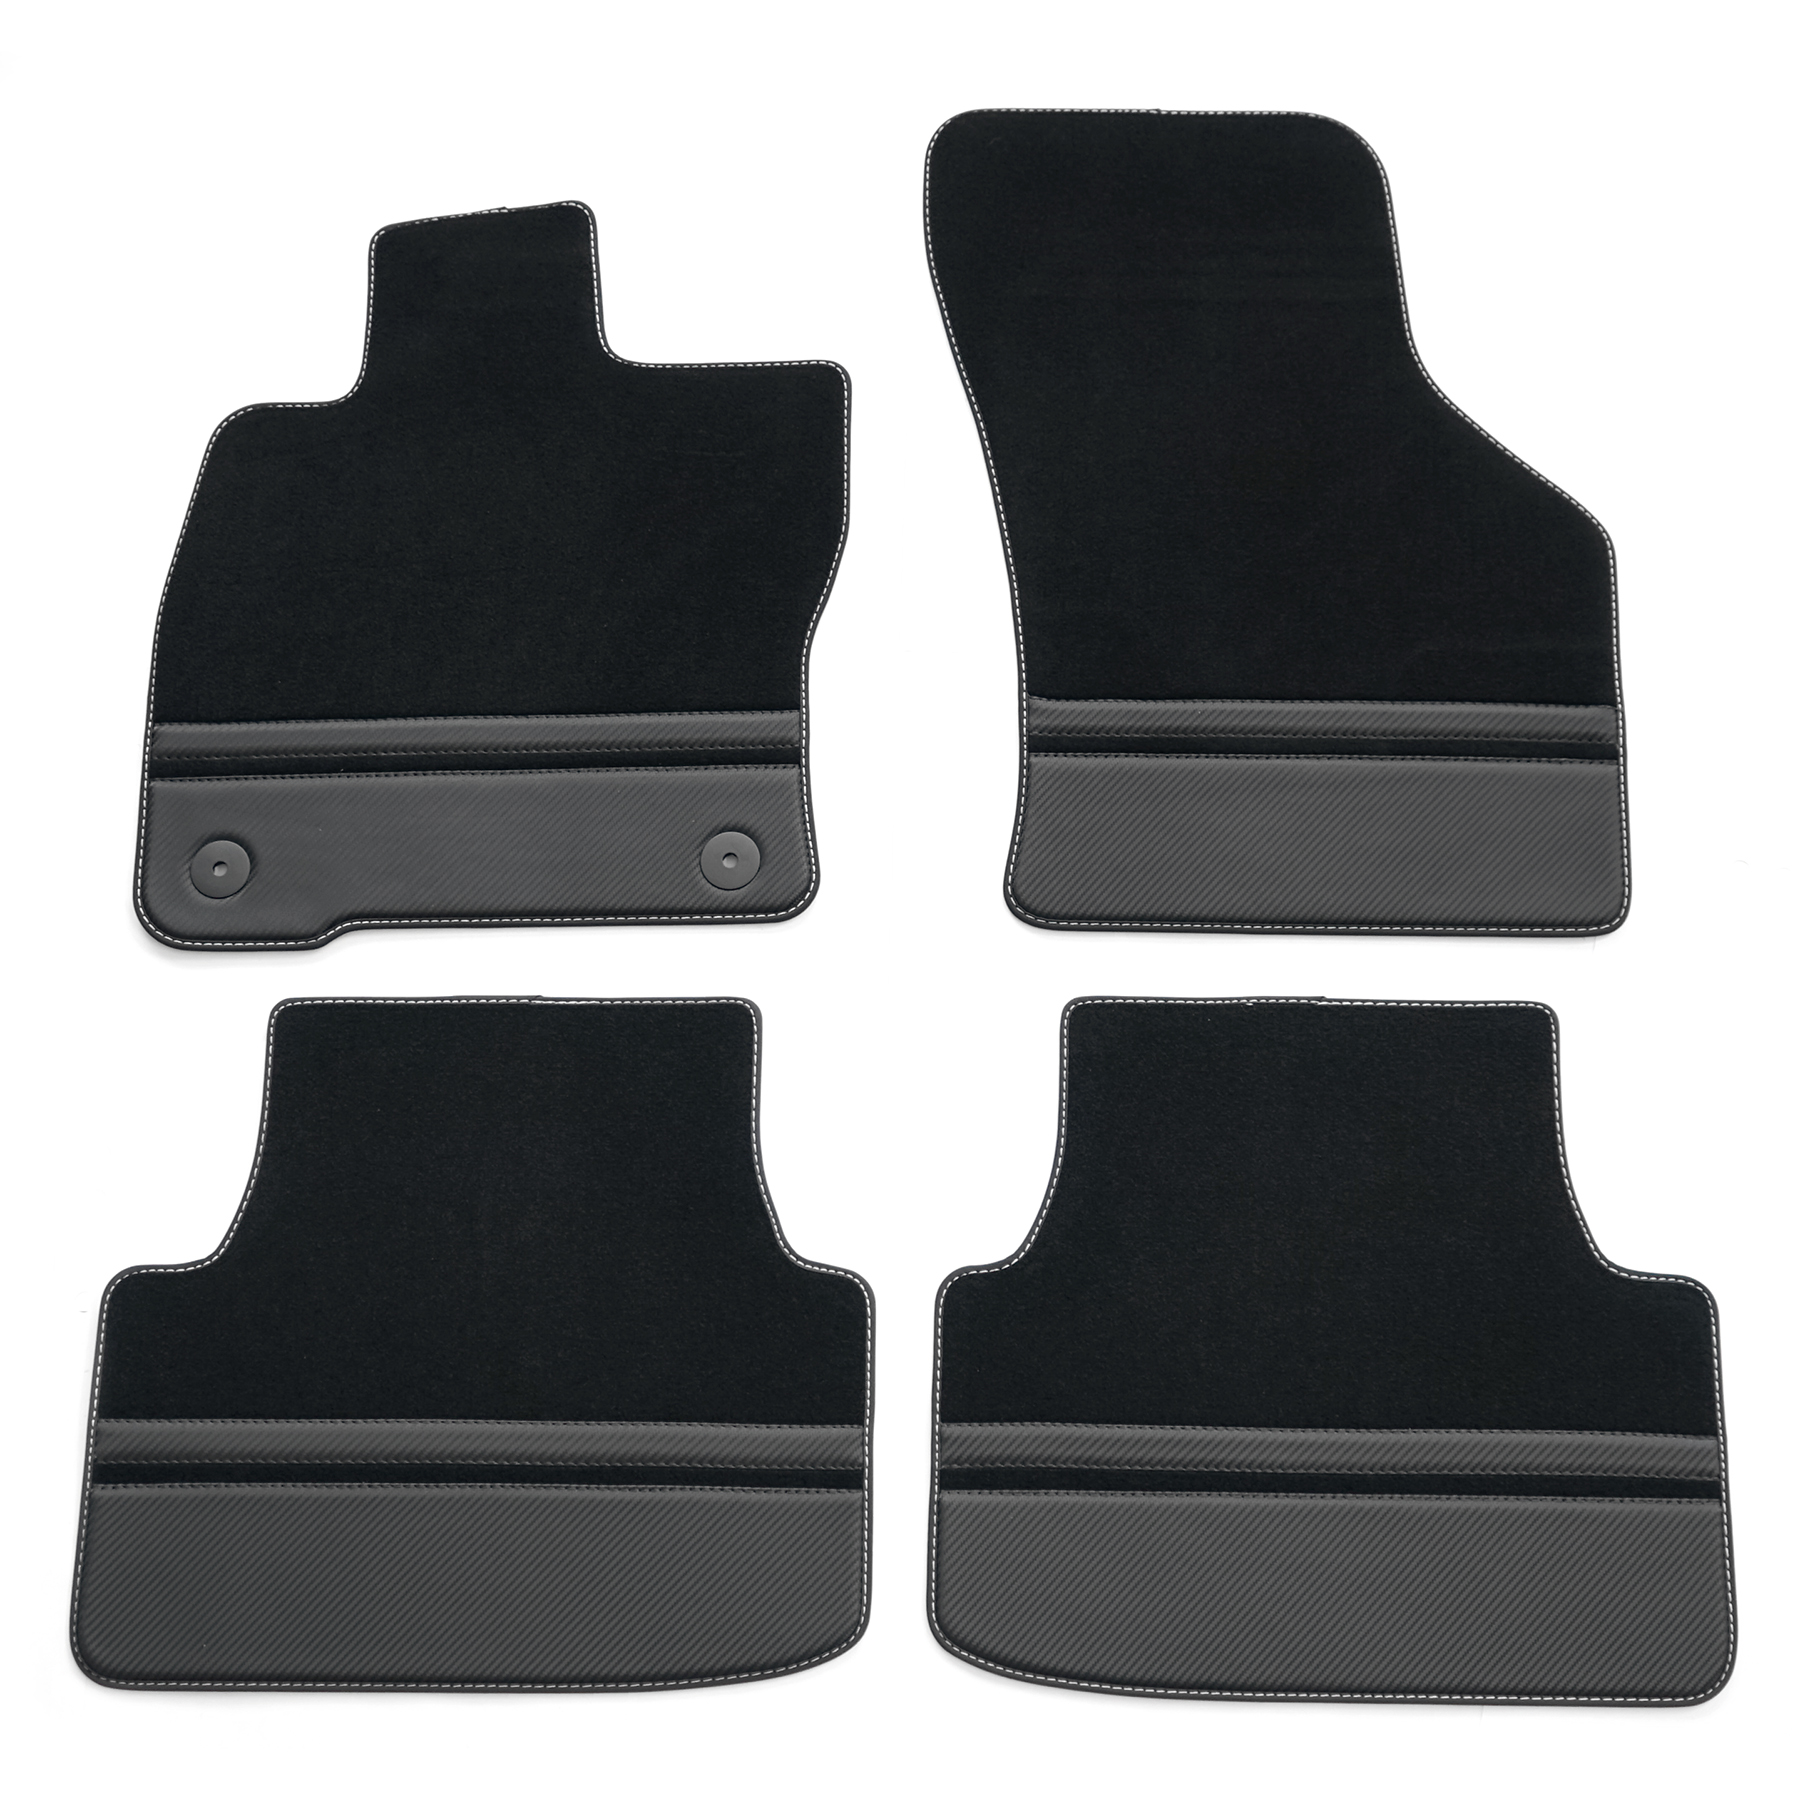 kfz-premiumteile24 KFZ-Ersatzteile und Fußmatten Shop, Fußmatten passend  für Seat Leon 5F Leon ST ab 2012 Velours Premium Qualität Autoteppich  schwarz/silber